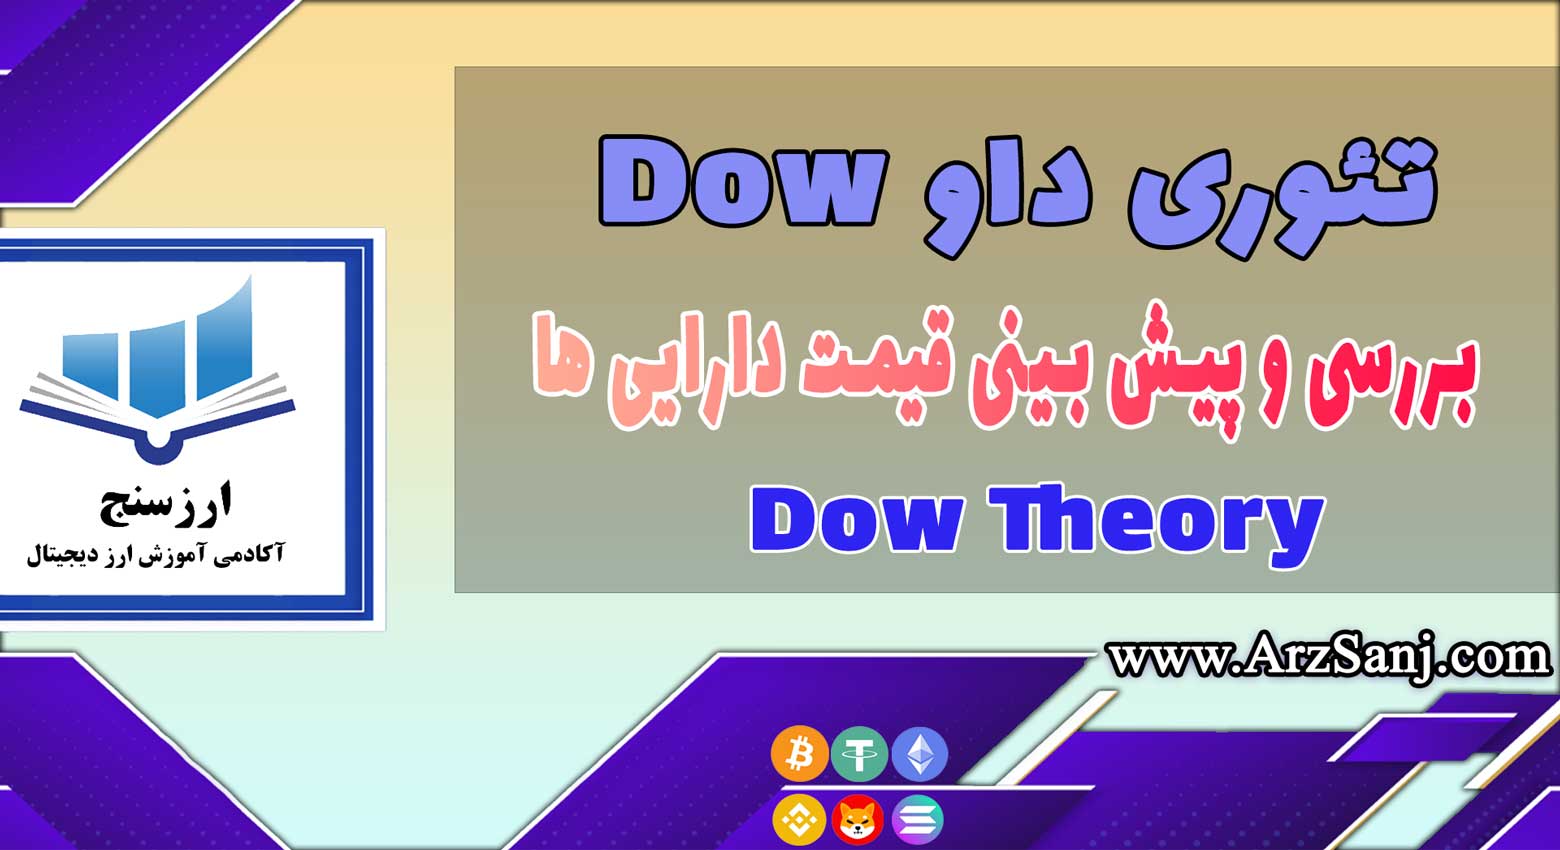 تئوری داو Dow چیست؟ (ویدیوی آشنایی با نظریه Dow Theory)